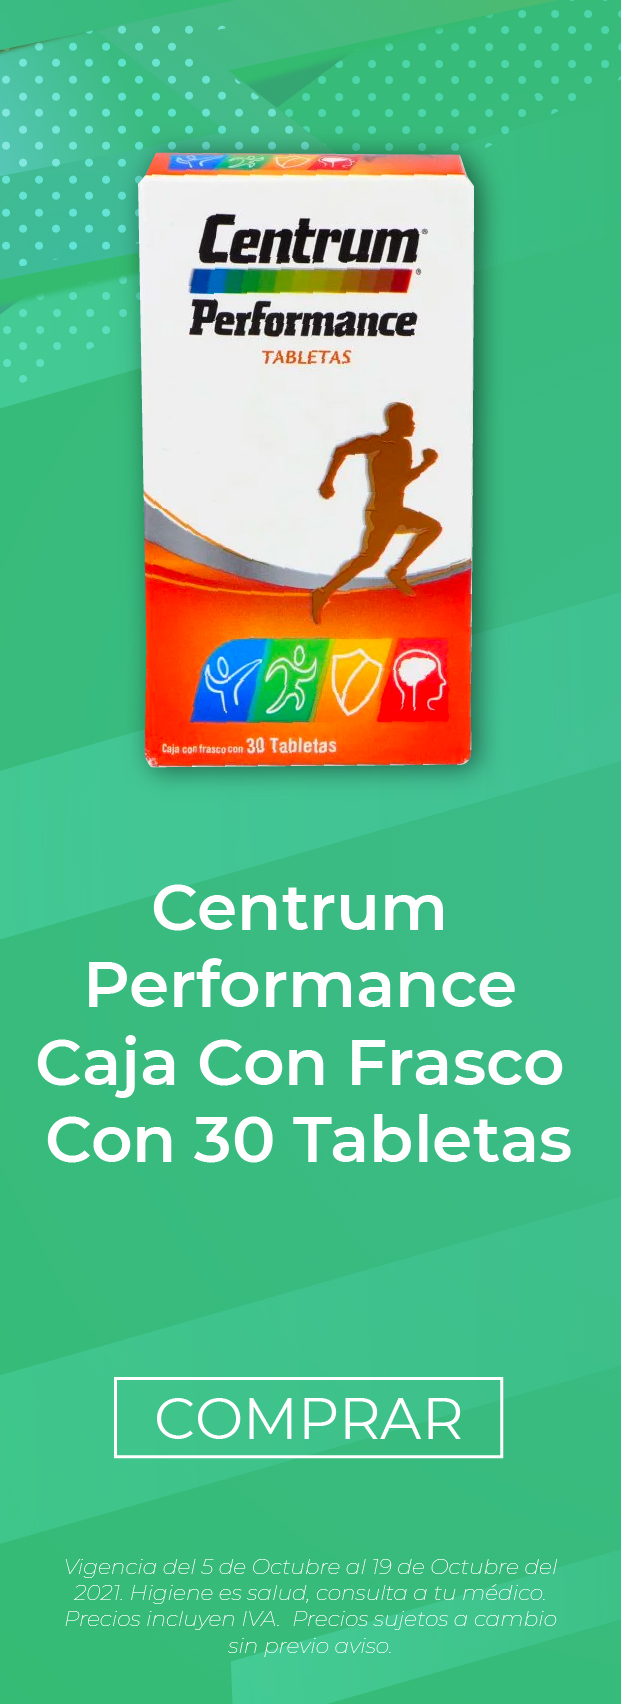 Centrum Performance 30 tabletas al mejor precio